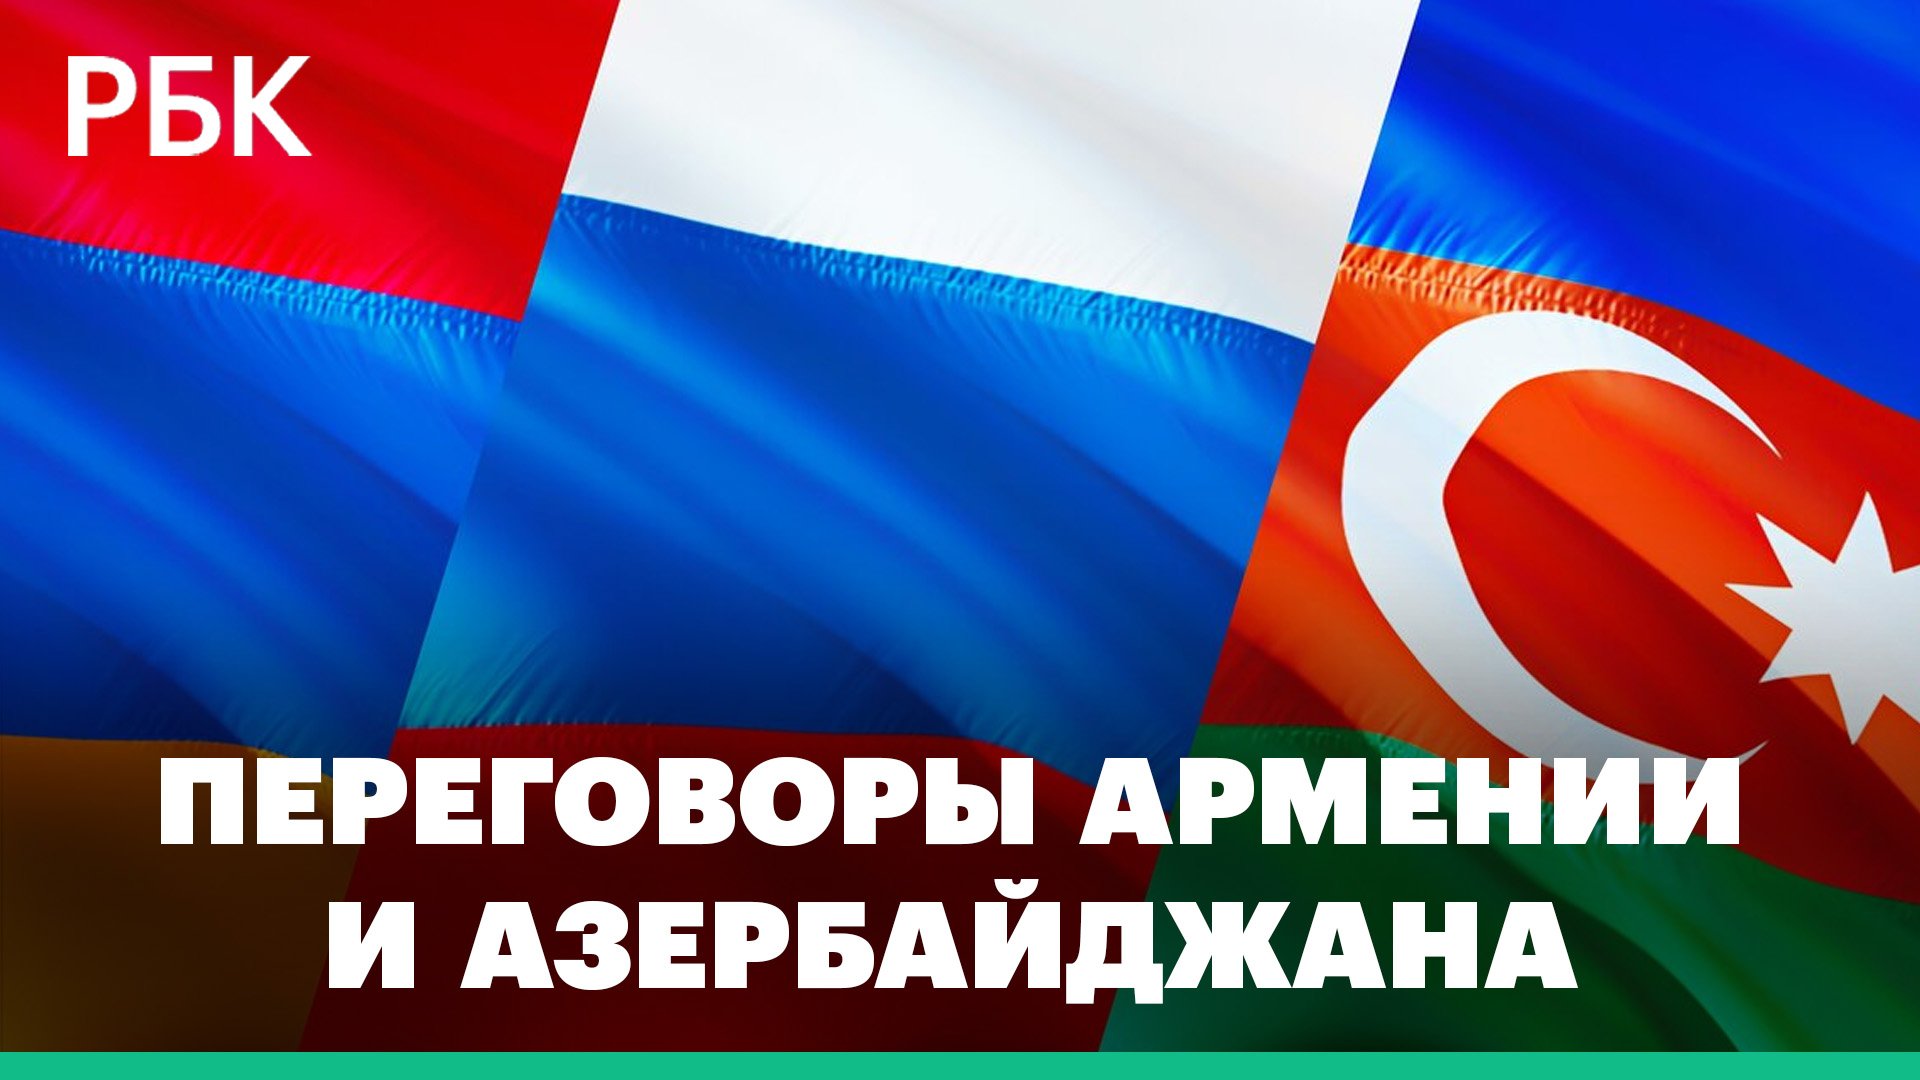 Переговоры Армении и Азербайджана в Тбилиси: есть ли подвижки к заключению мирного договора